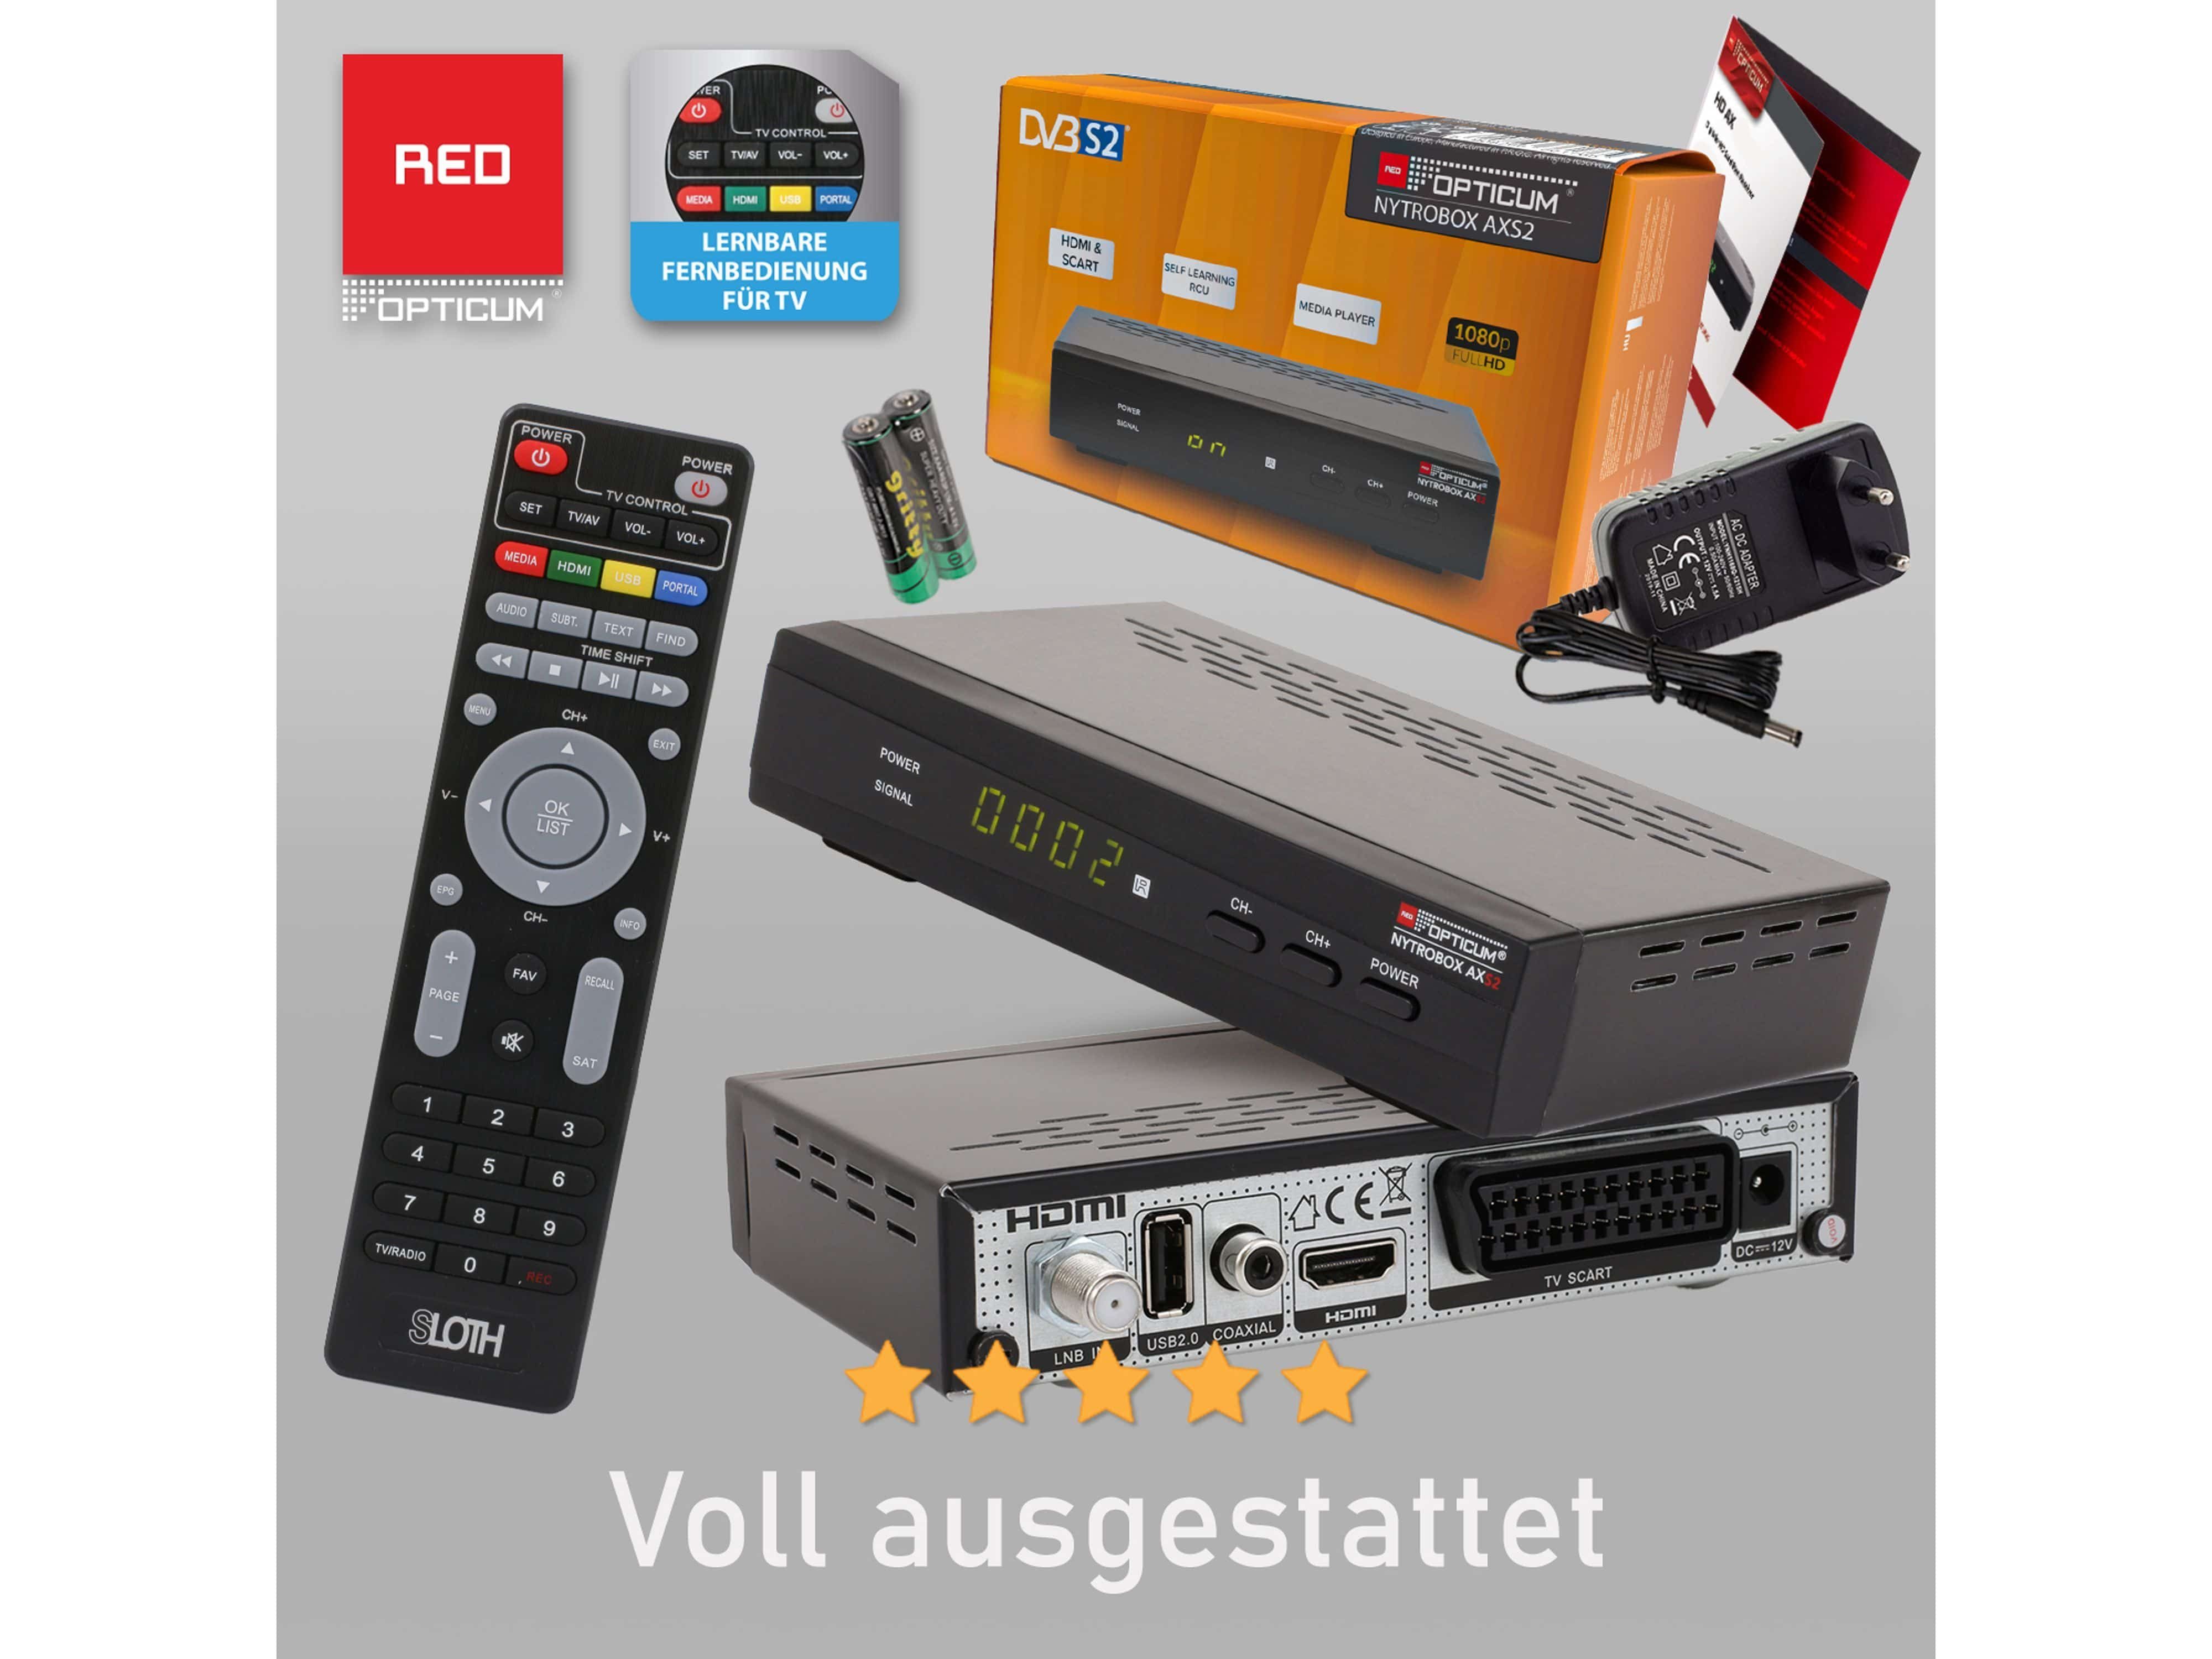 OPTICUM Satellitenreceiver RED AXS2, mit RED NYTROBOX OPTICUM HDTV DVB-S Receiver